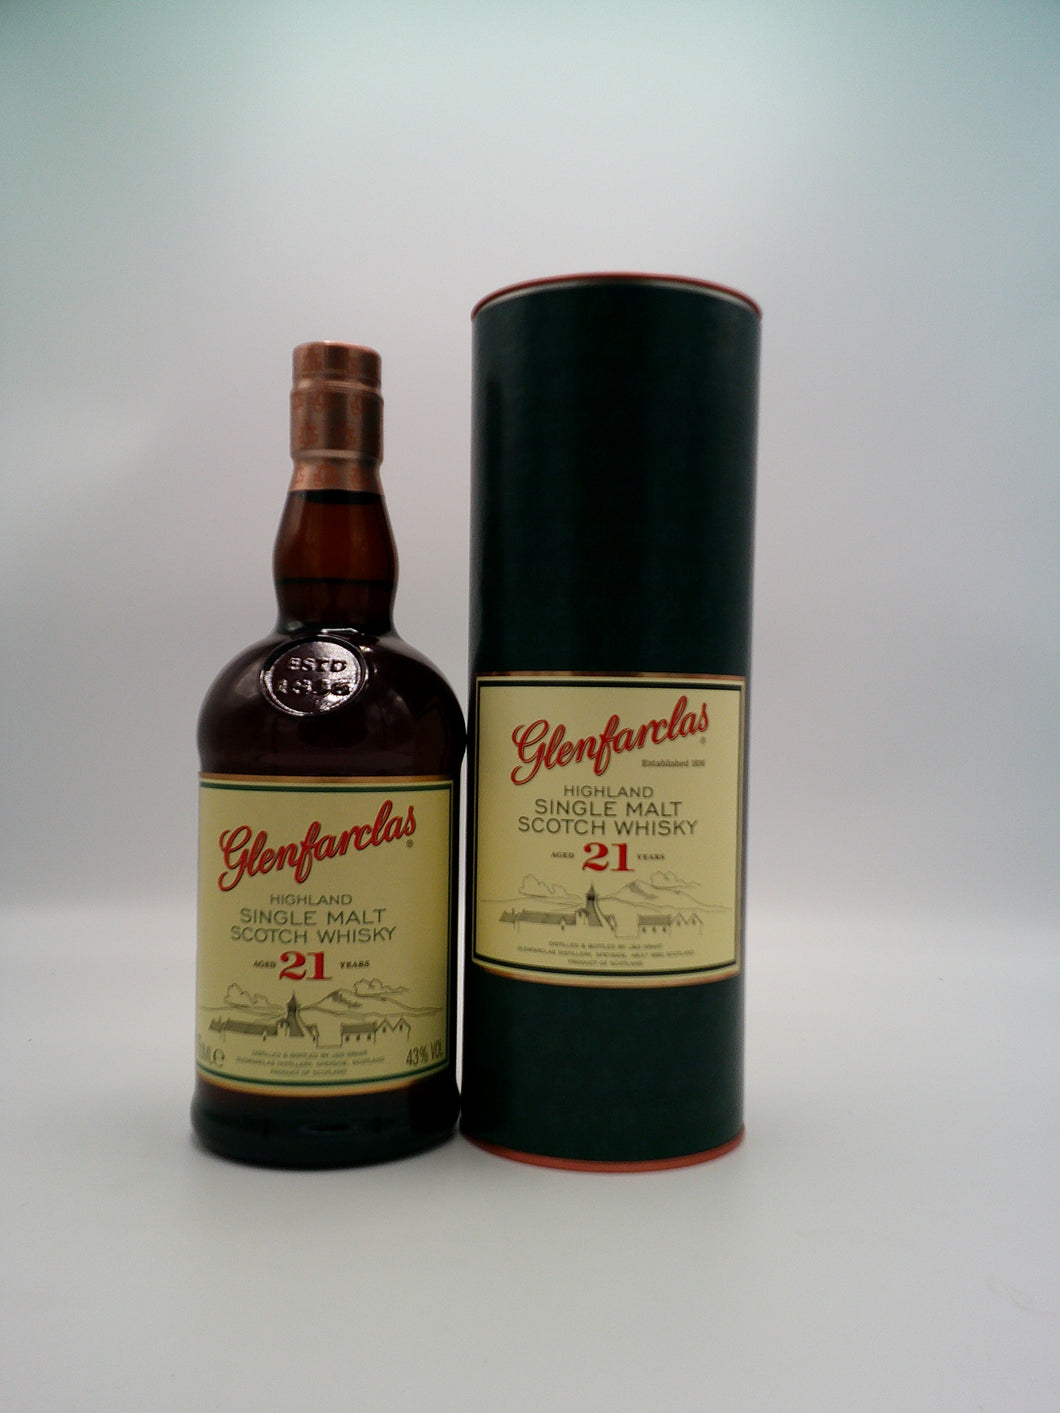 Glenfarclas 21 Year Old Single Malt Scotch Whisky